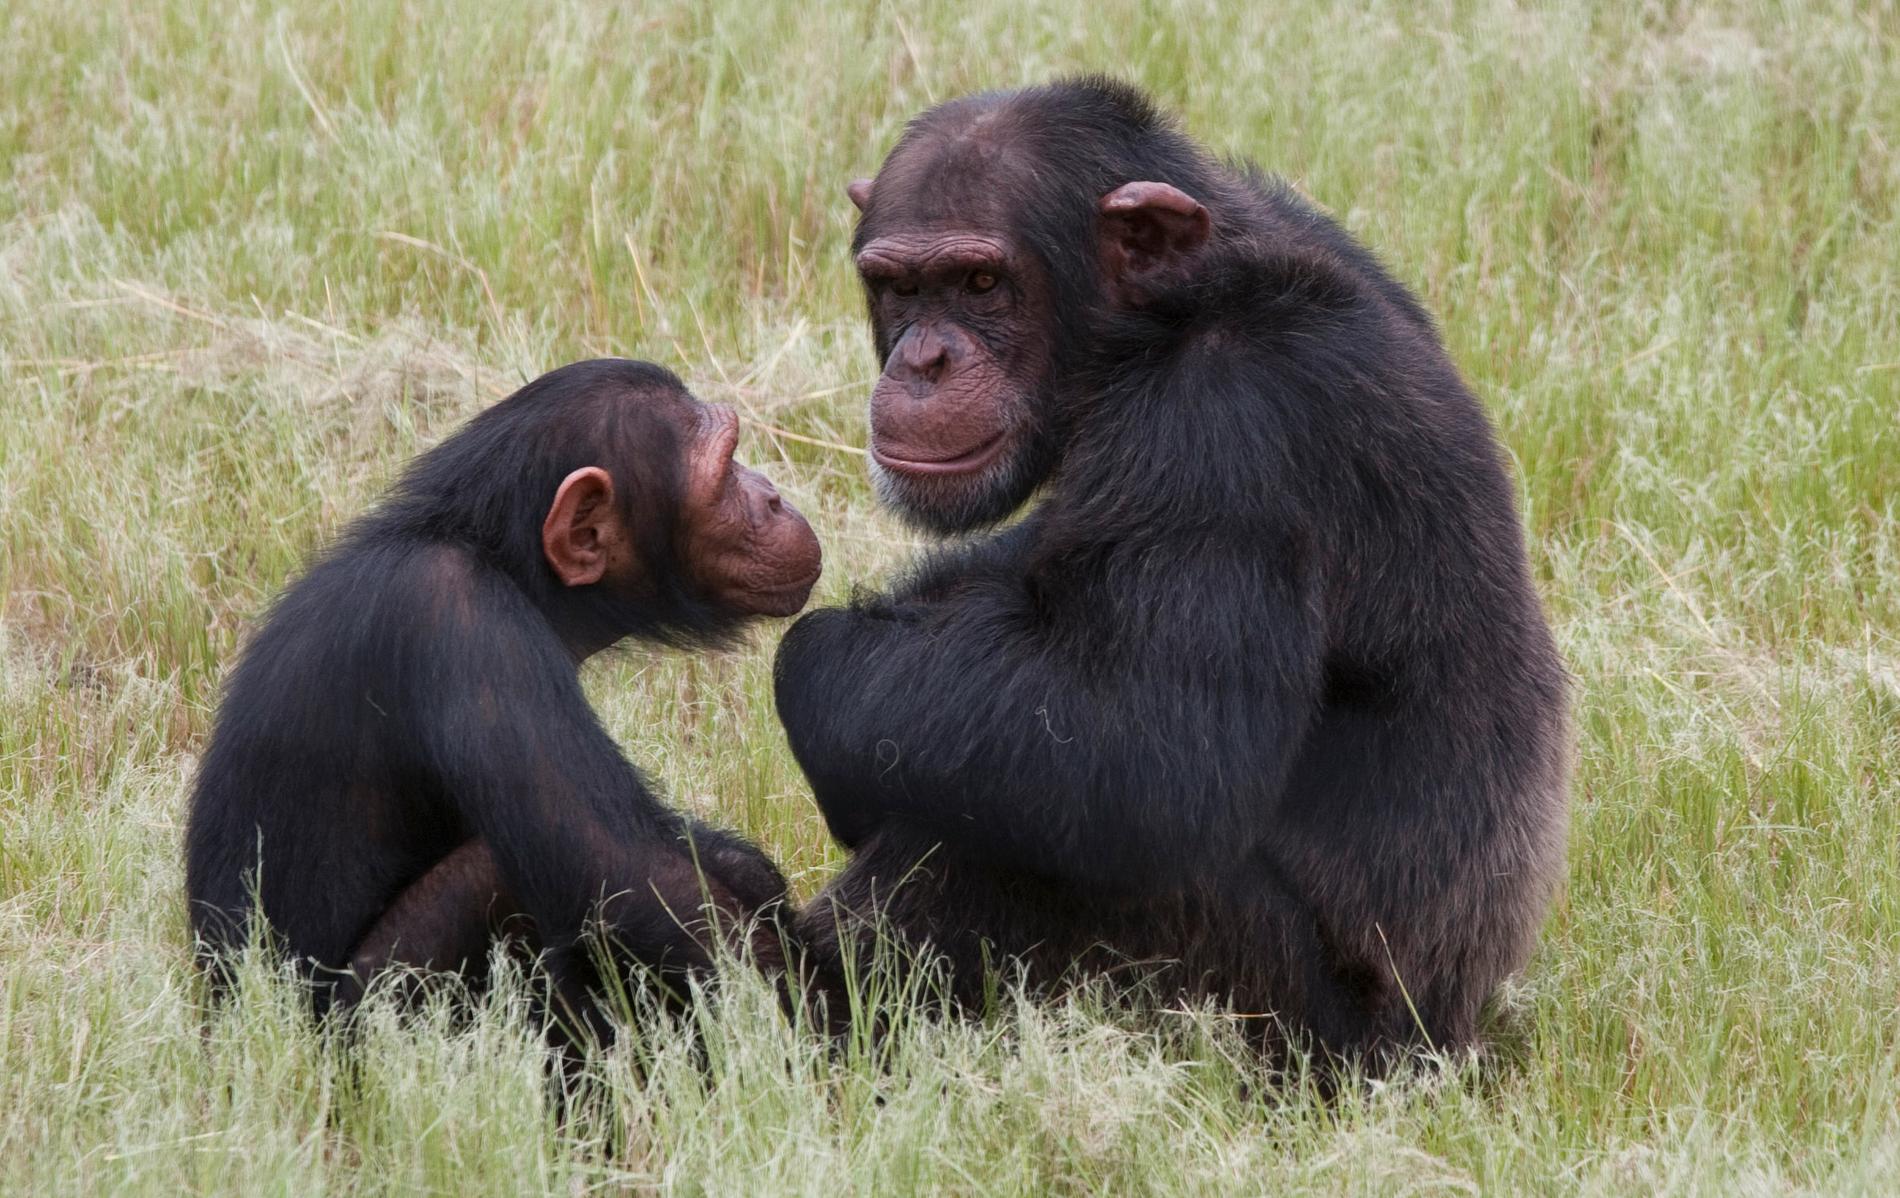 Hur mycket vi kan lära oss av andra primaters sociala liv, som här schimpanser, finns olika uppfattning om. Arkivbild.